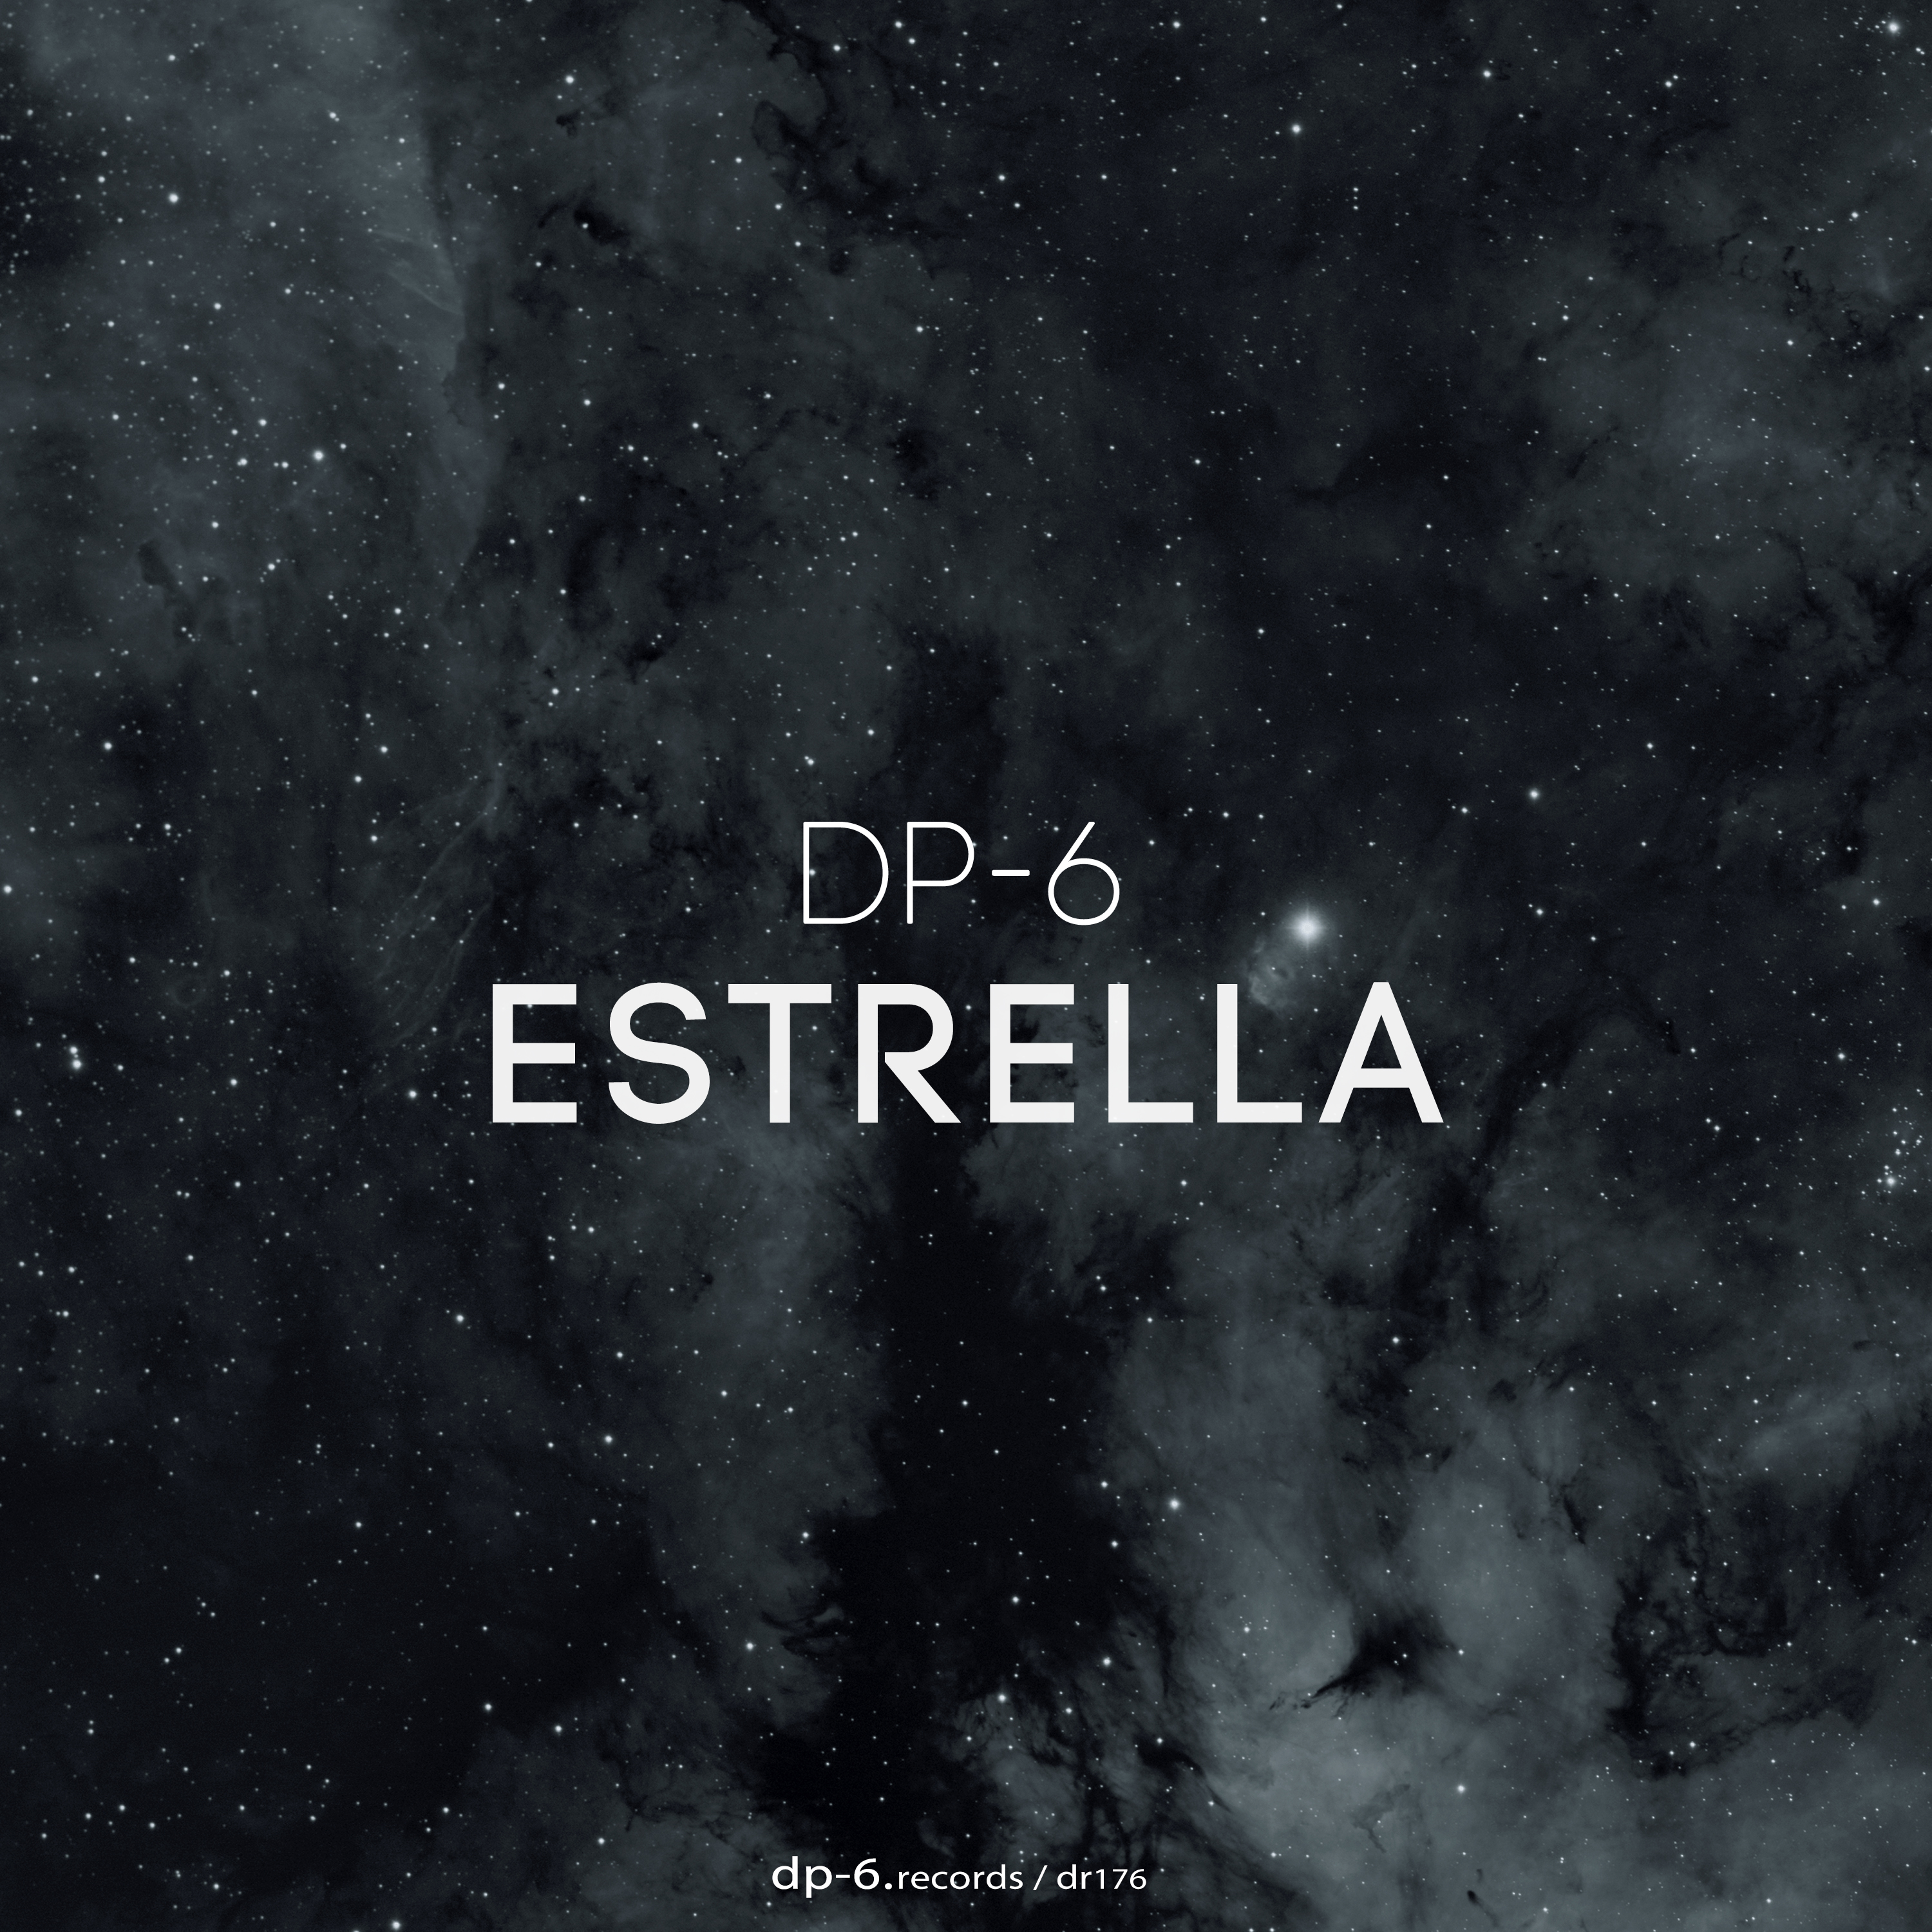 DP-6: Estrella